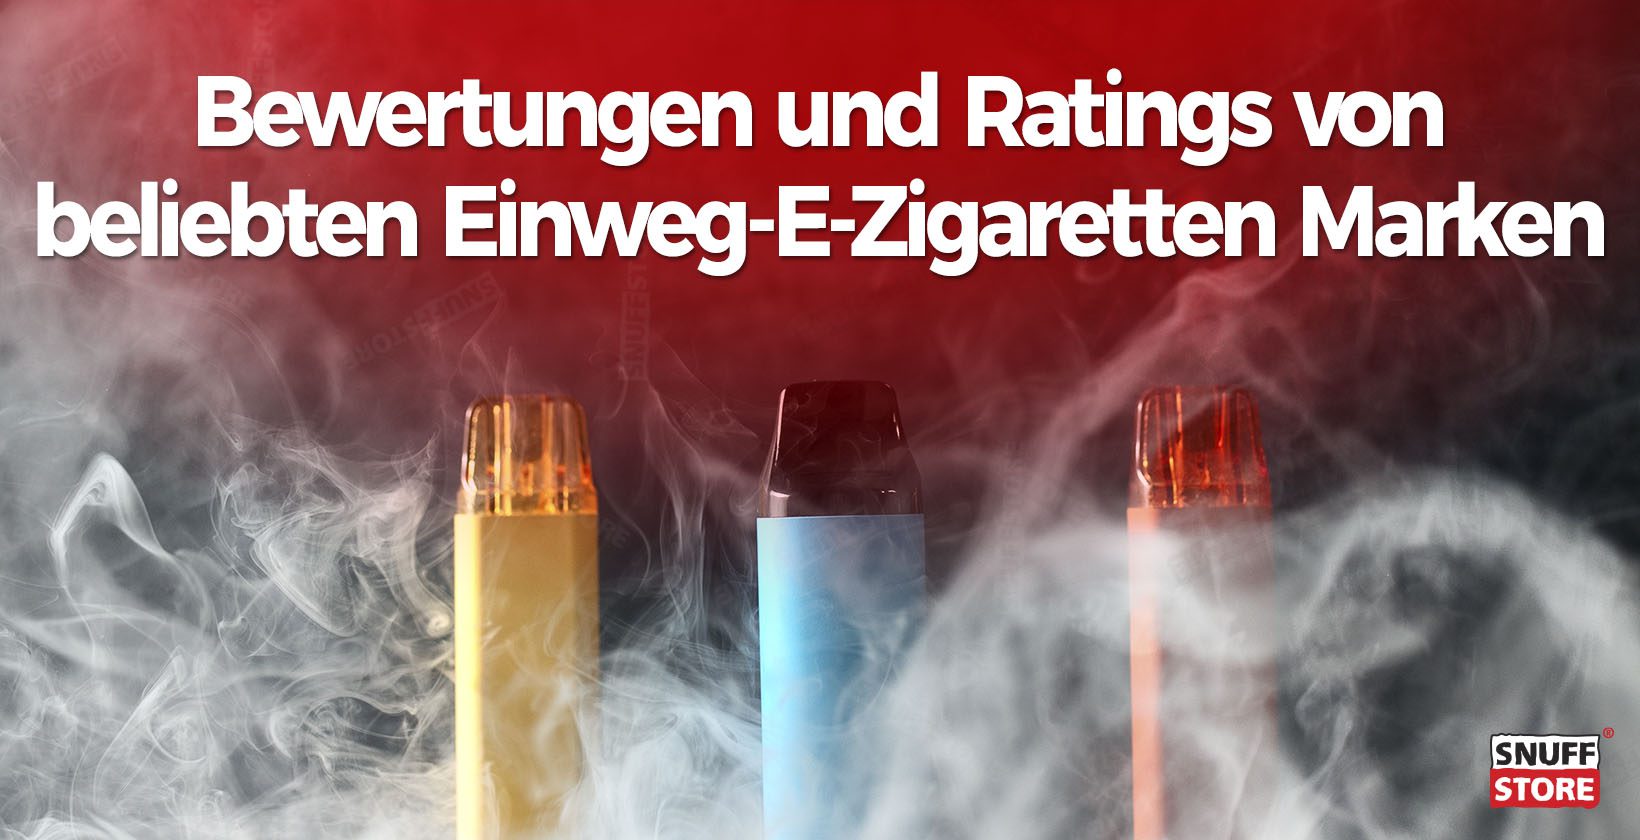 Bewertungen und Ratings von beliebten Einweg-E-Zigaretten Marken